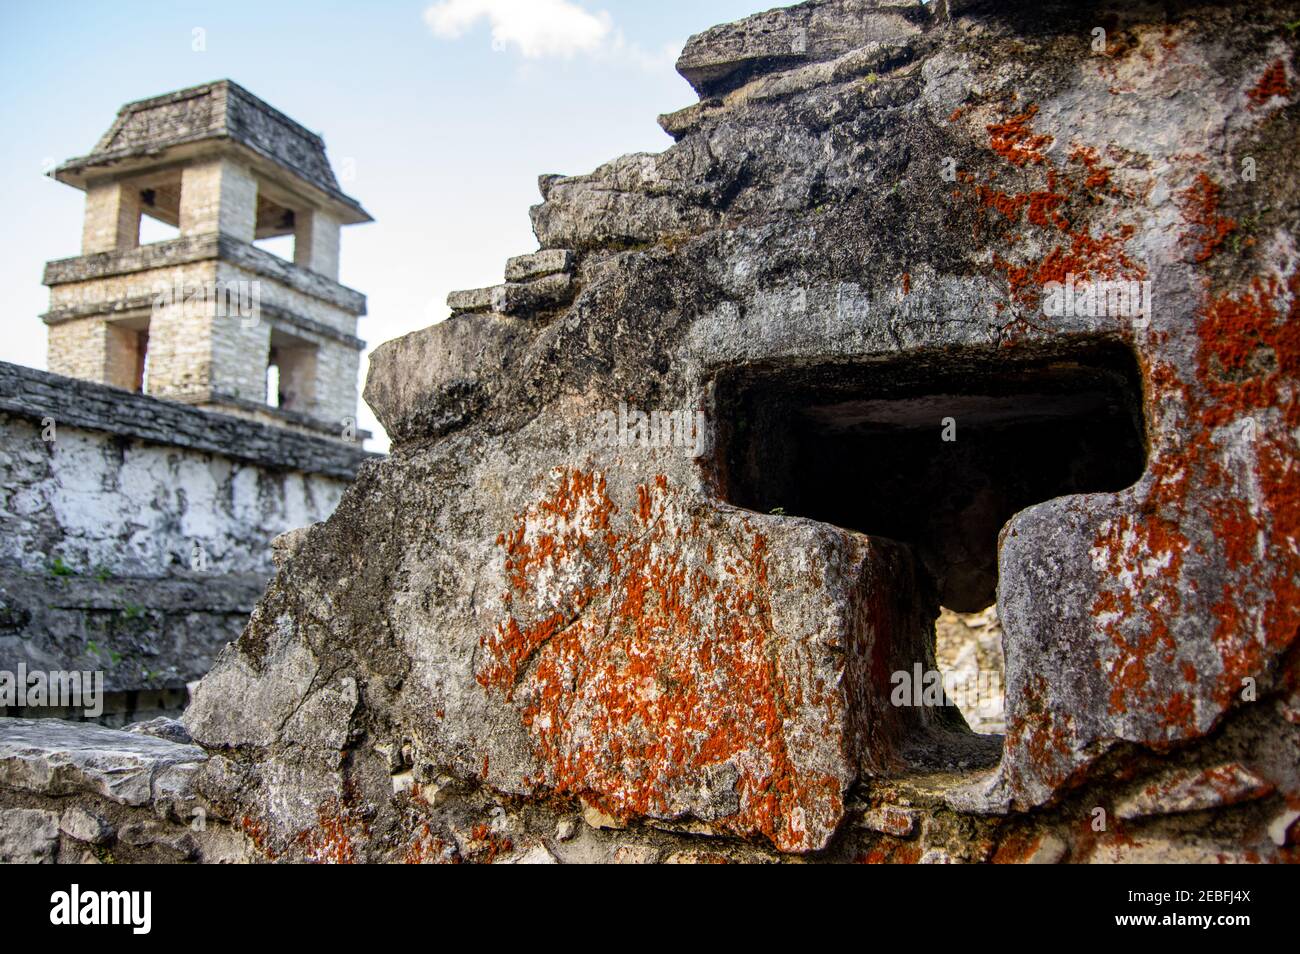 La Torre di osservazione del Palazzo presso le rovine Maya di Palenque, un sito patrimonio dell'umanità dell'UNESCO, a Chiapas, Messico Foto Stock